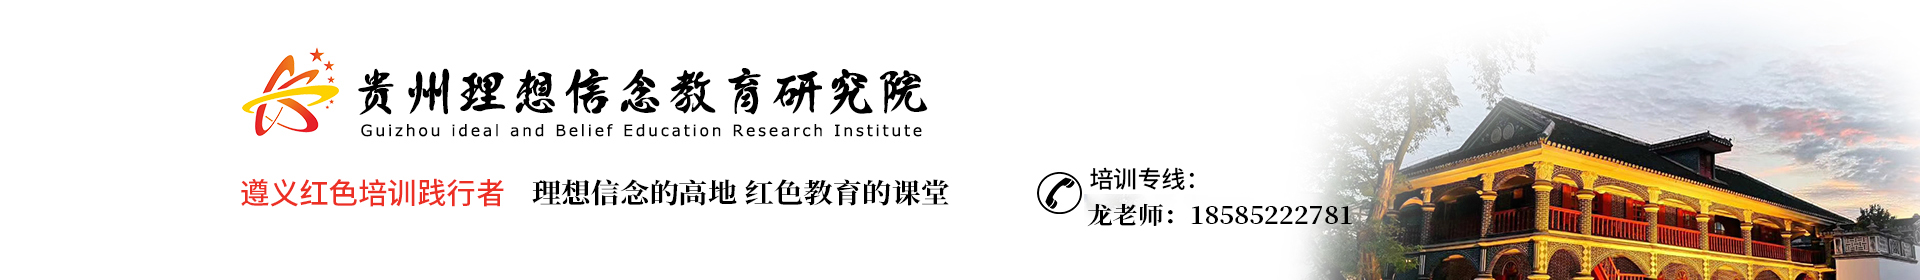 贵州理想信念教育研究院遵义干部红色教育培训中心